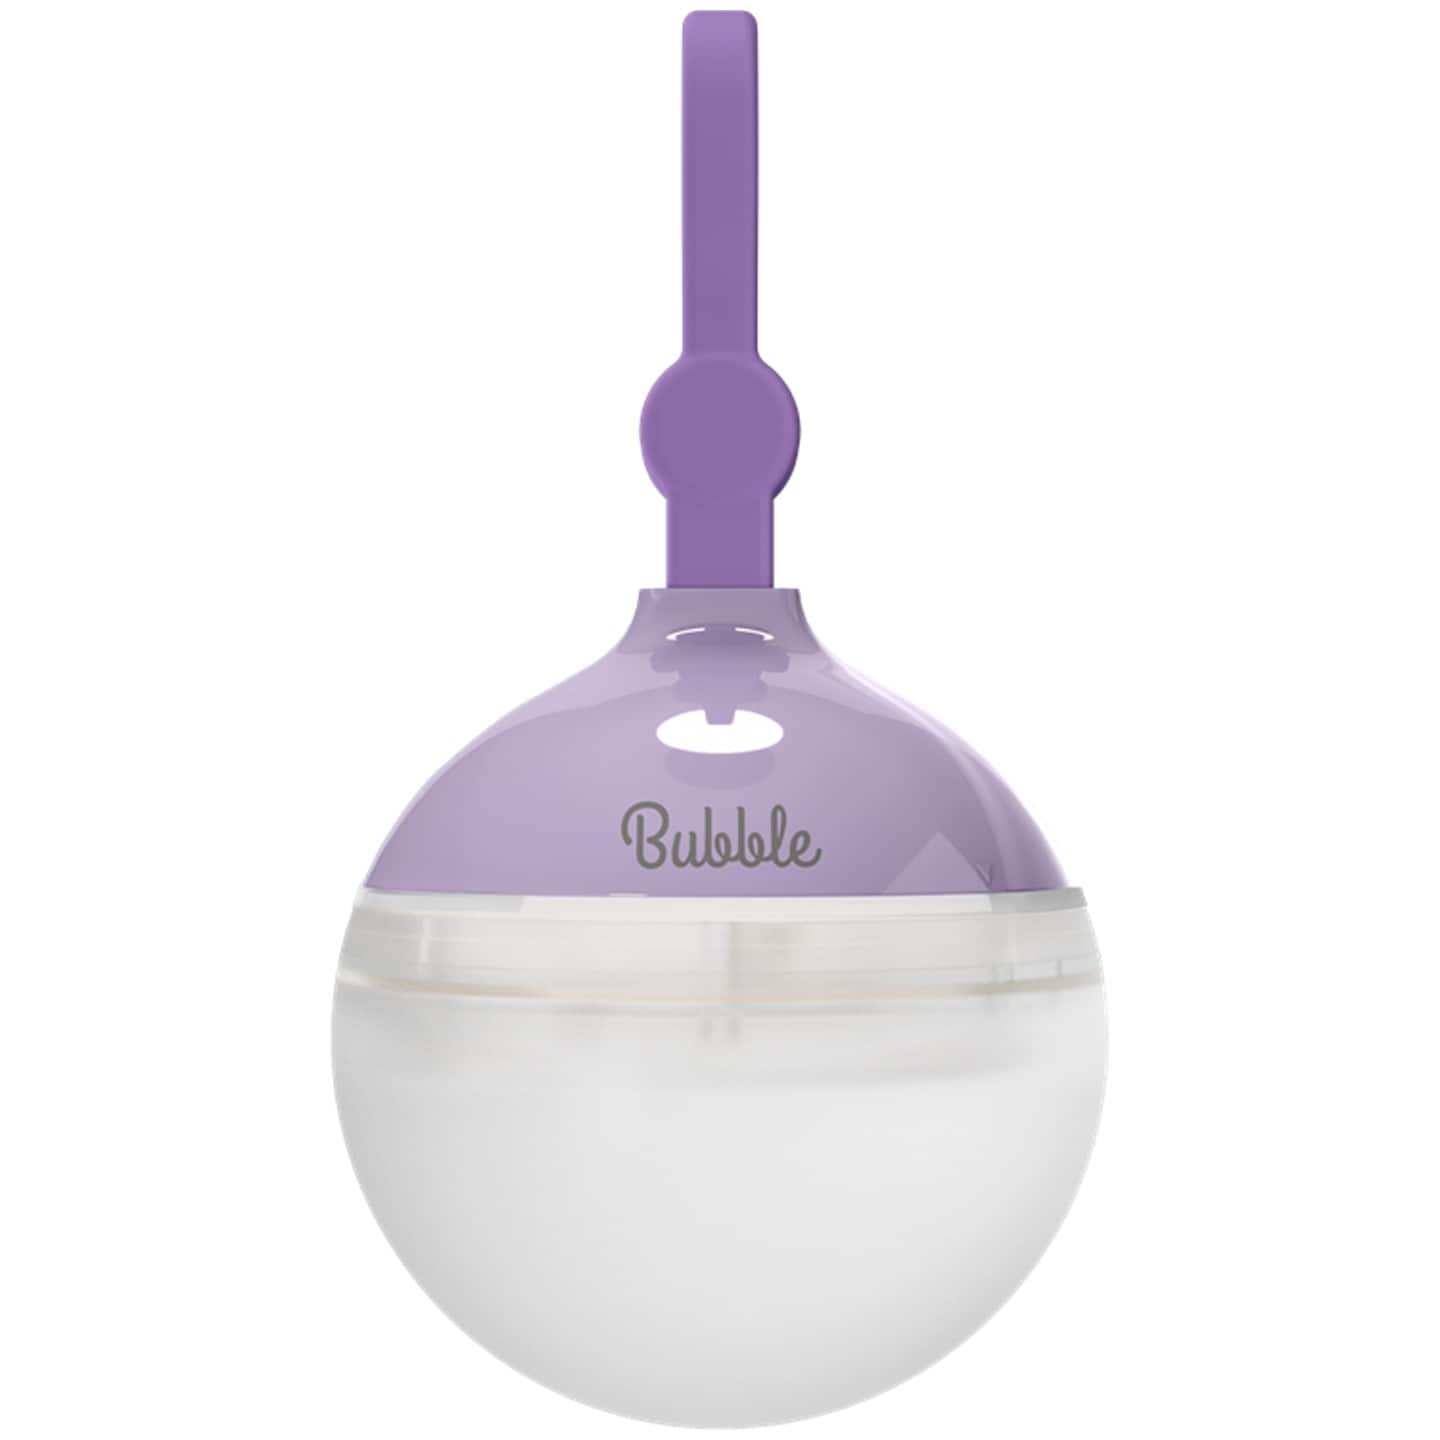 Lampa Nitecore Bubble Languld Lavender - 100 lumenów